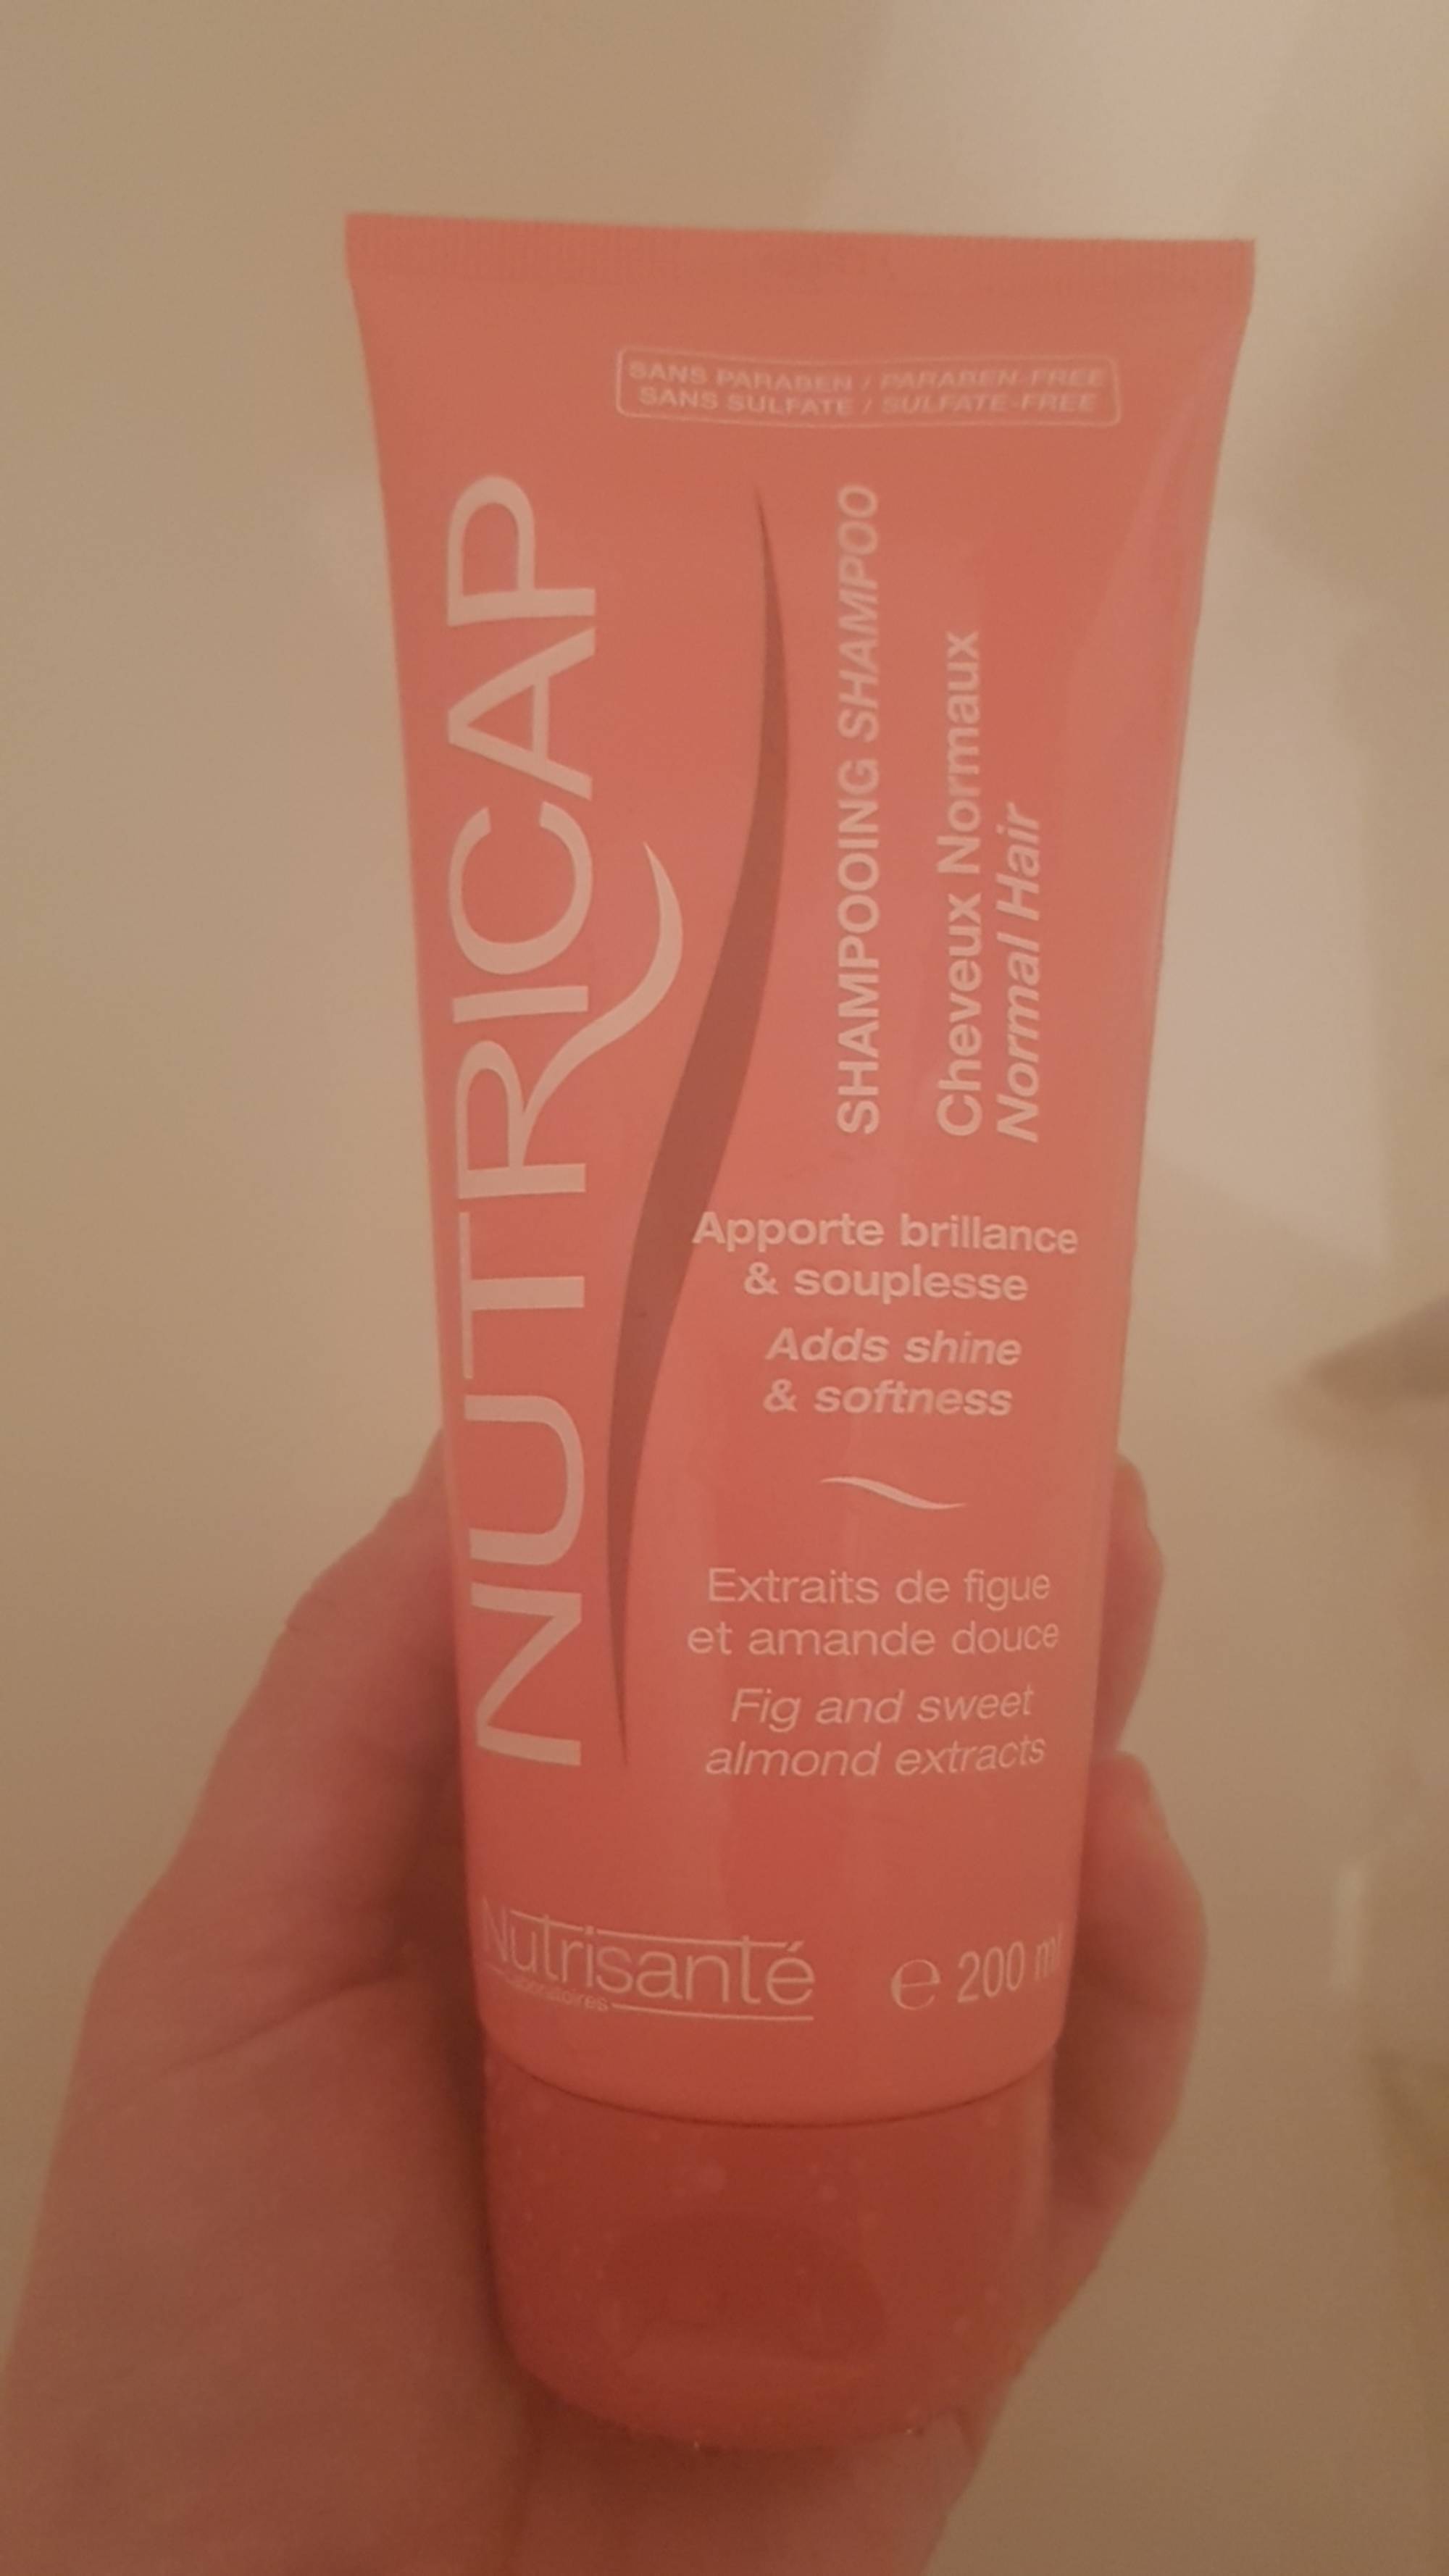 NUTRISANTÉ - Nutricap - Shampooing cheveux normaux